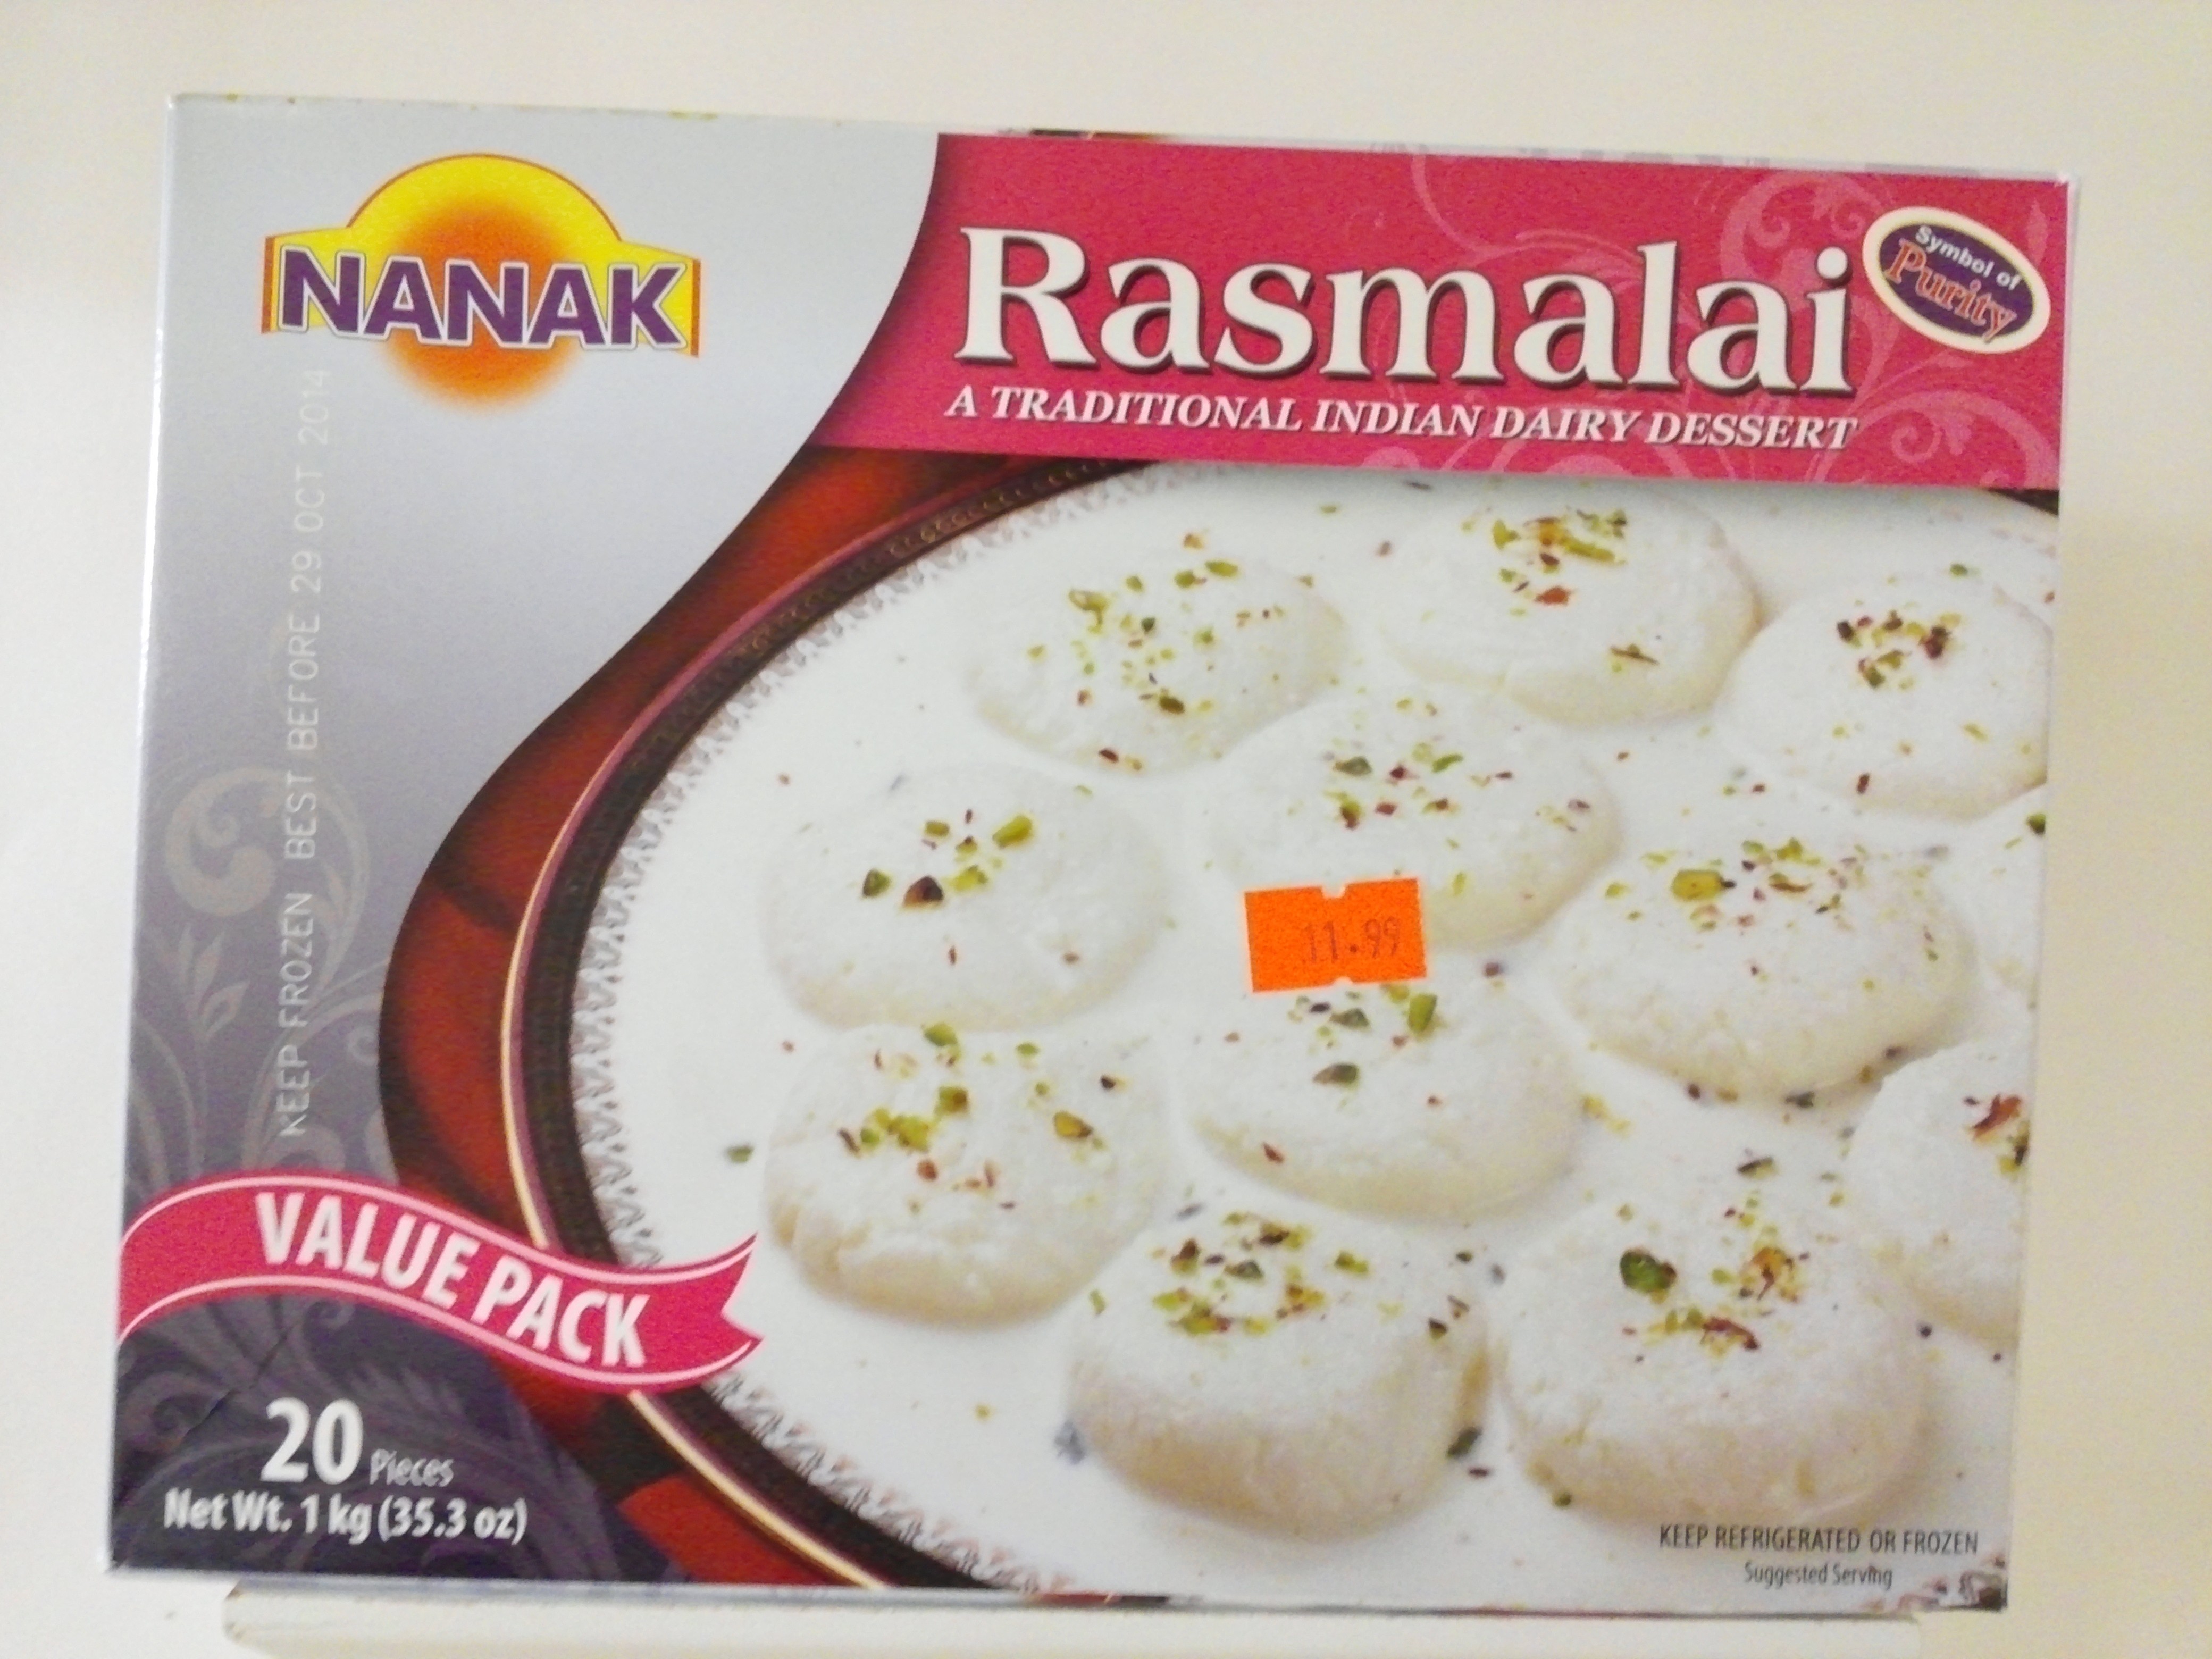 Nanak Rasmalai 1 kg (35.3 oz)